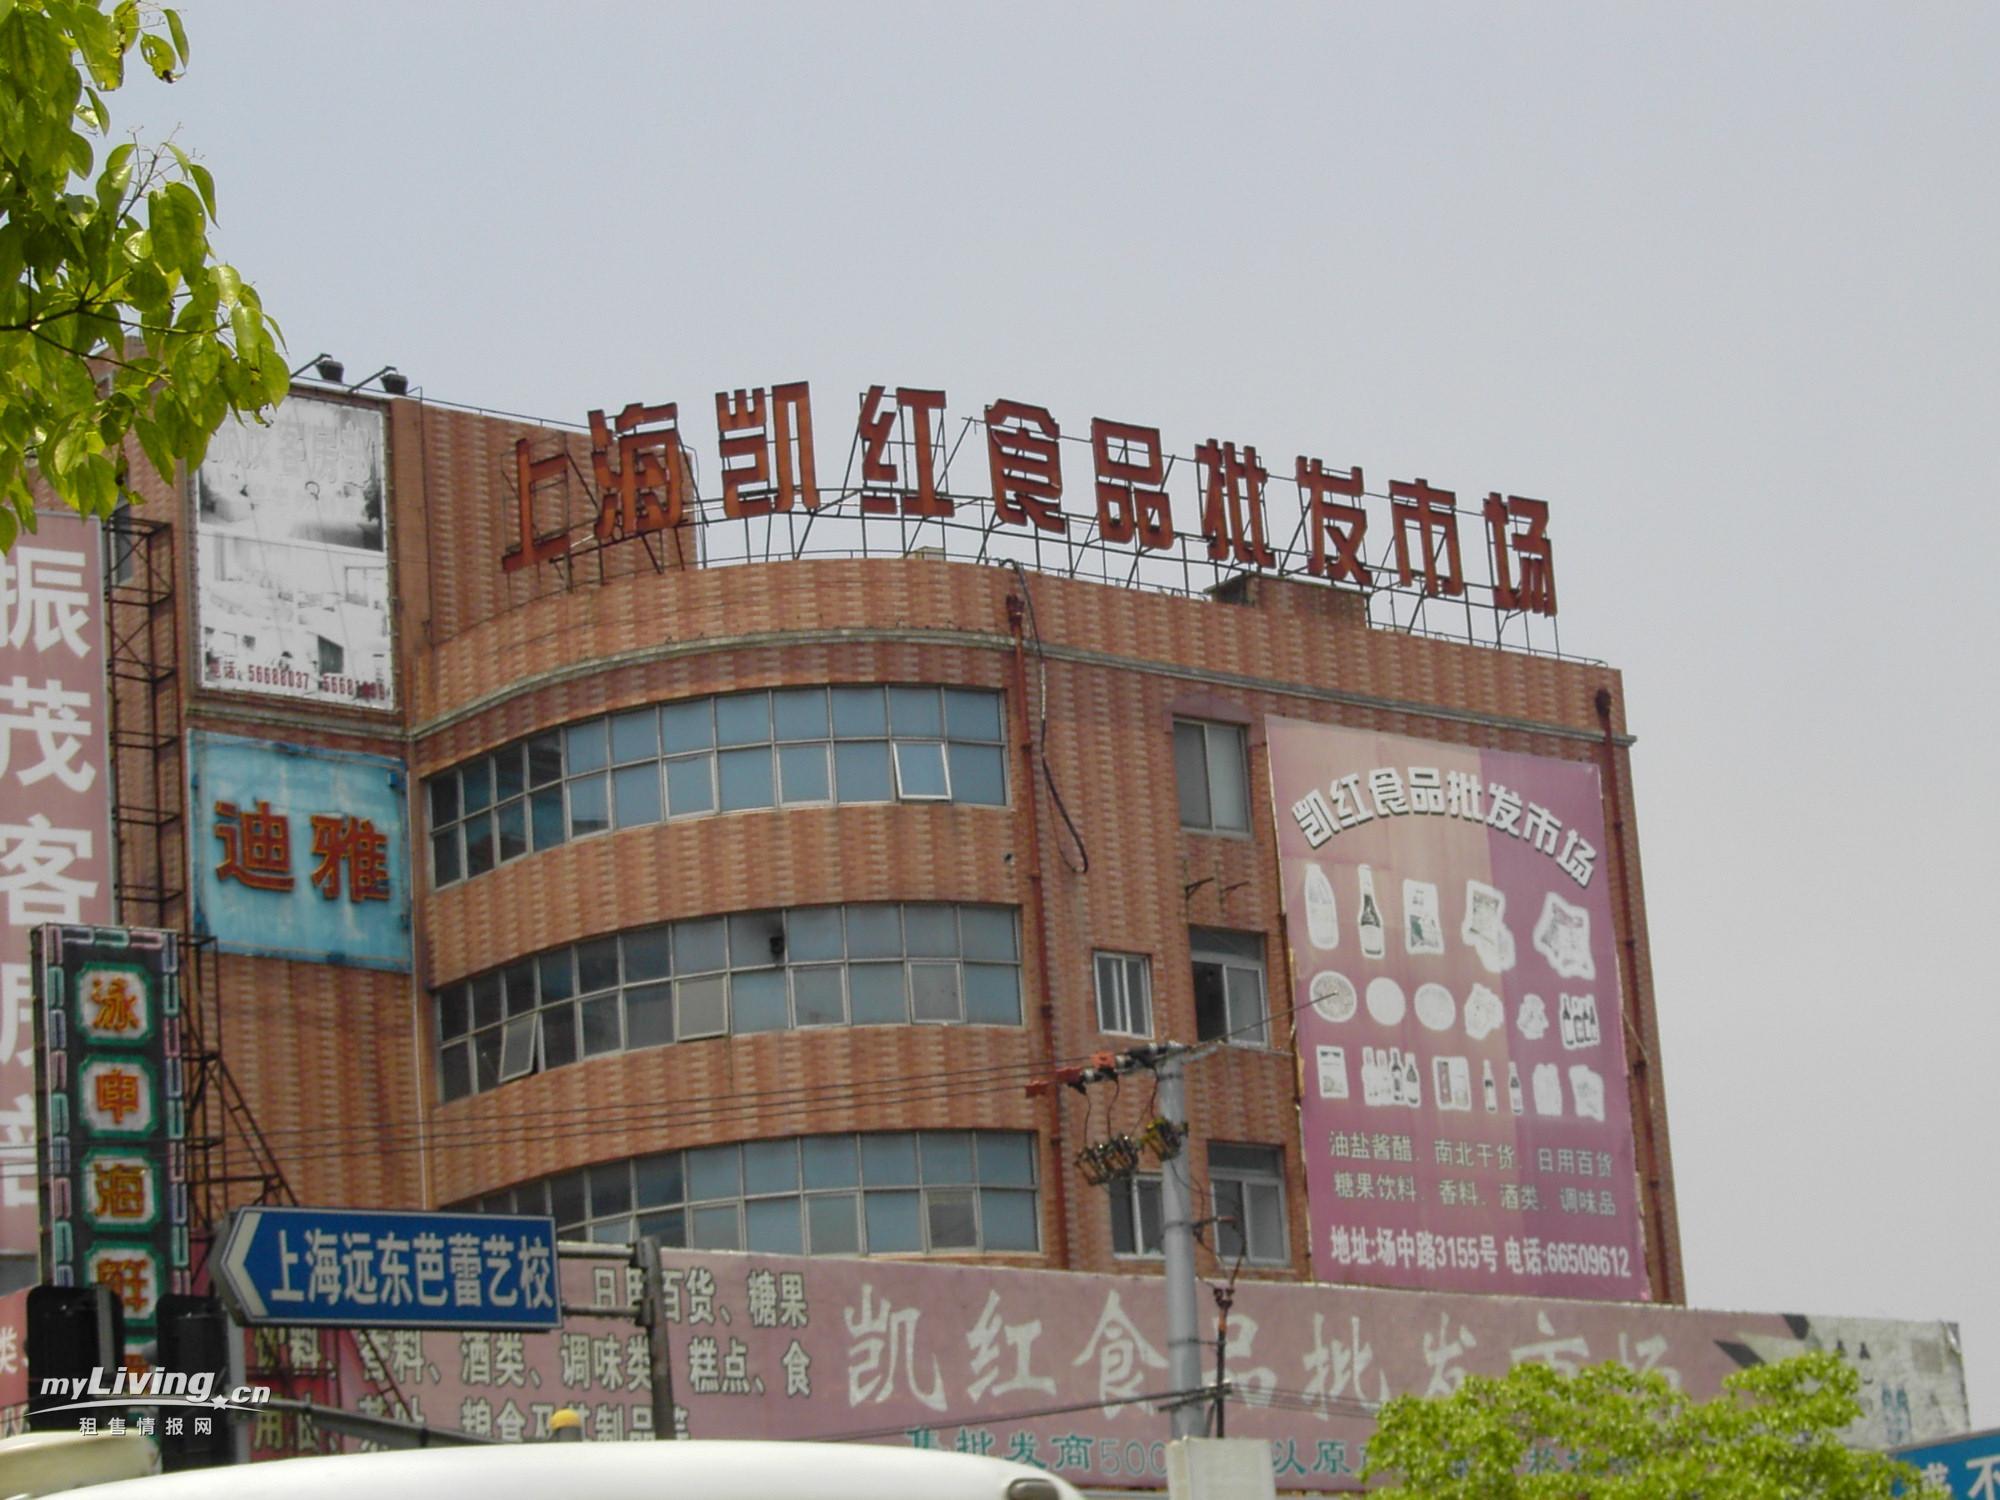 上海凯红食品批发市场